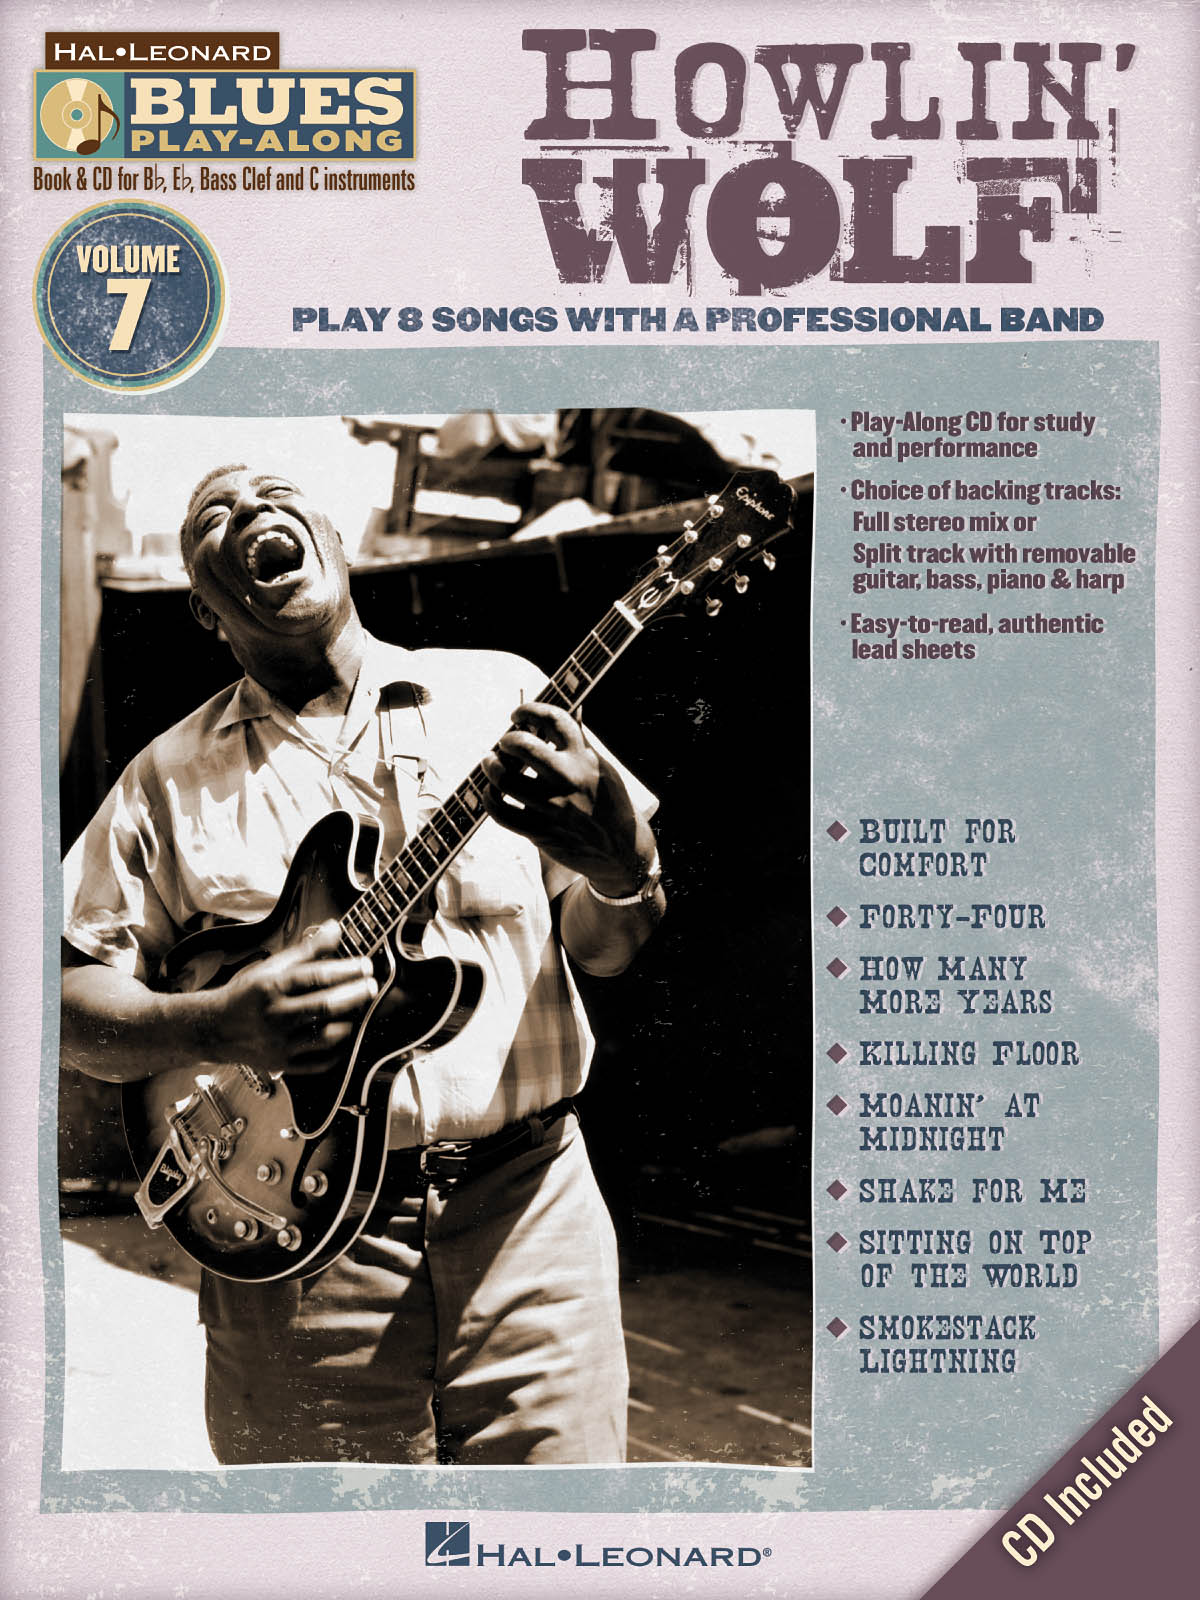 Howlin' Wolf - Blues Play-Along Volume 7 - melodie s akordy pro nástroje v ladění C